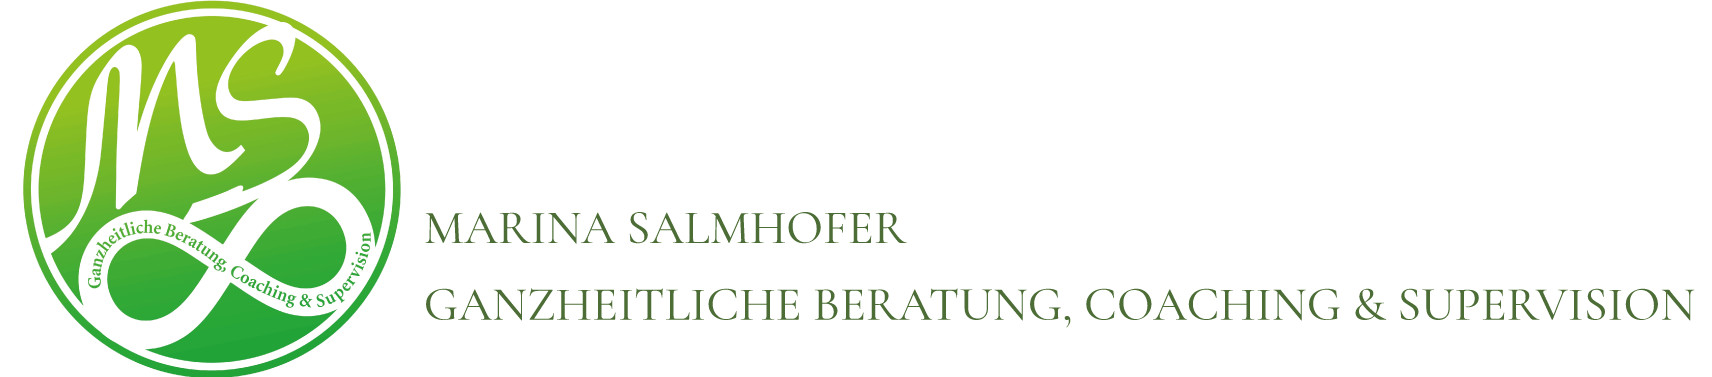 Marina Salmhofers Logo mit Ganzheitlicher Beratung, Coaching und Supervision